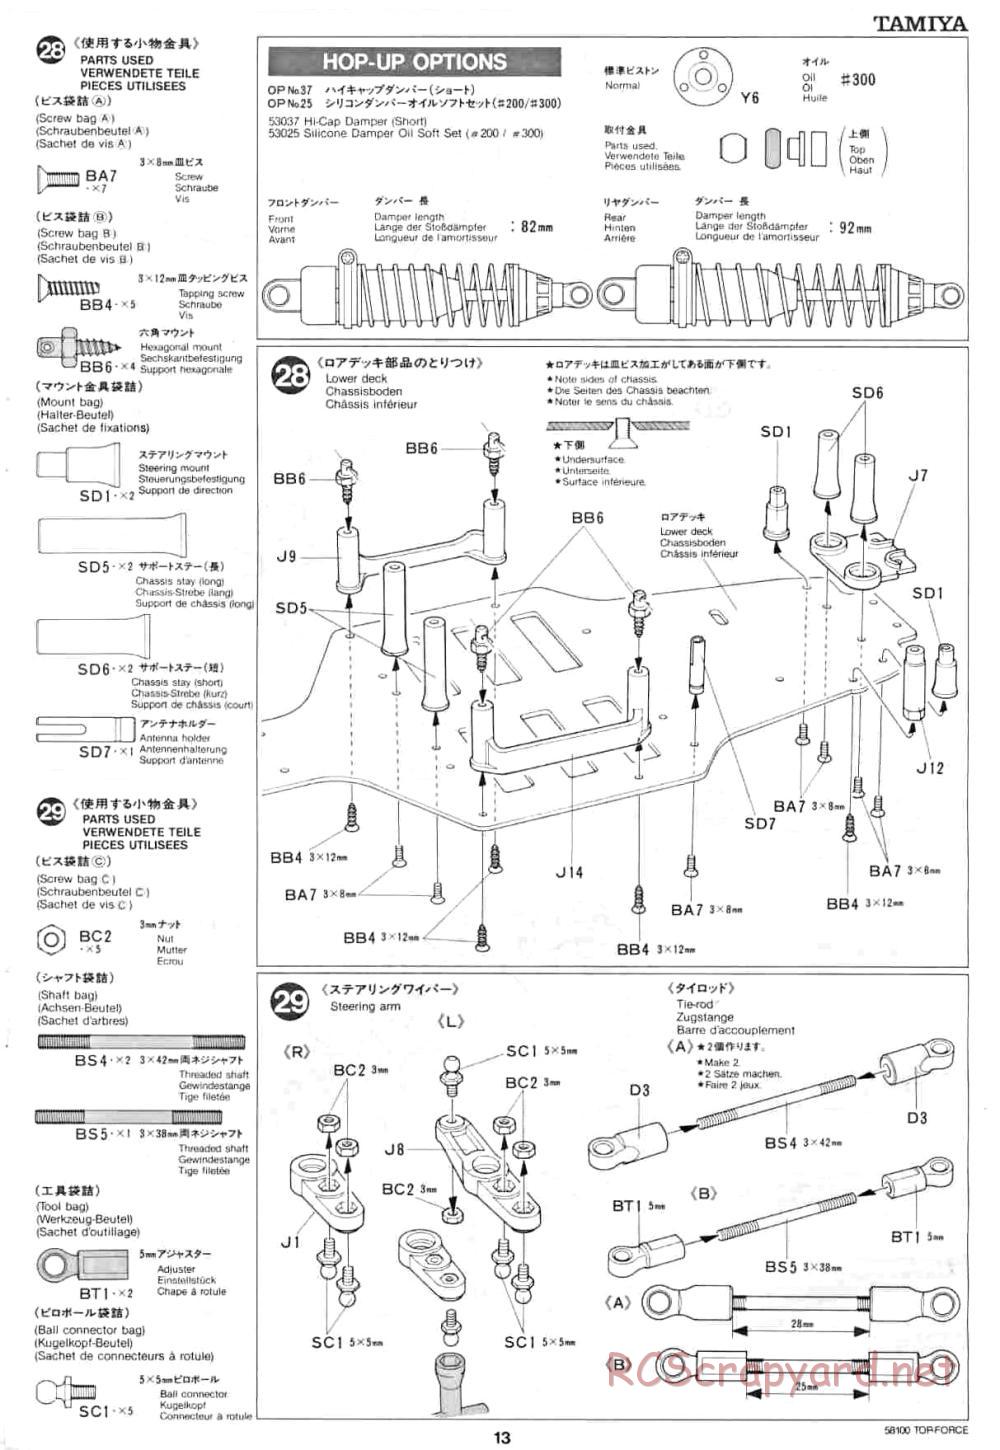 Tamiya - Top Force - 58100 - Manual - Page 13